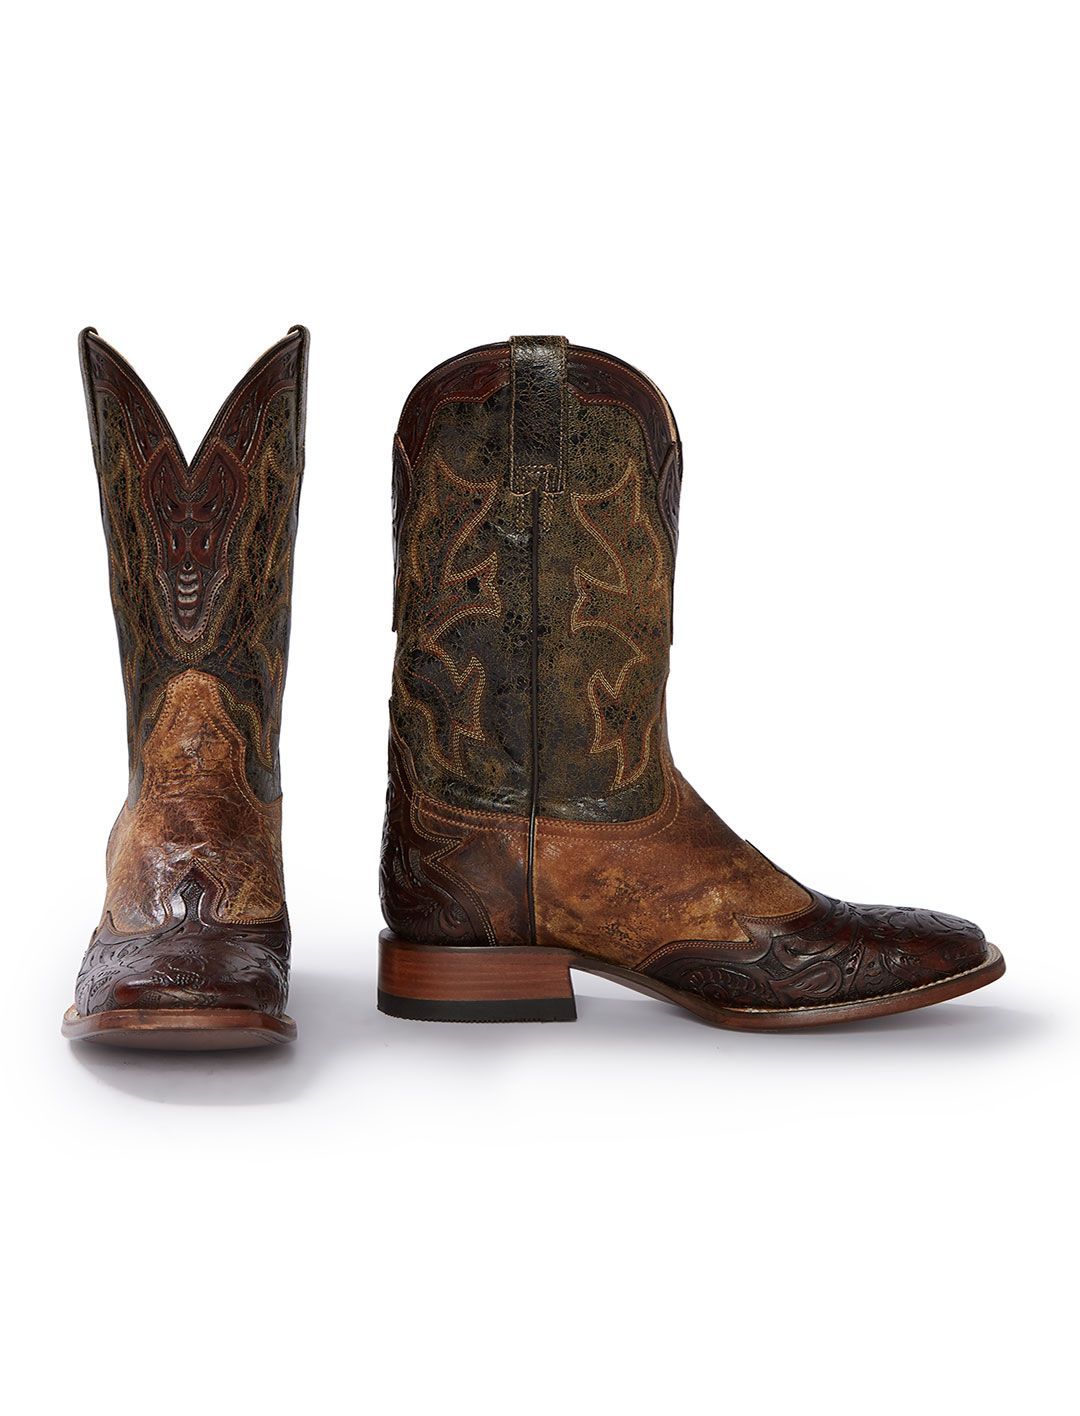 mens cowboy boots